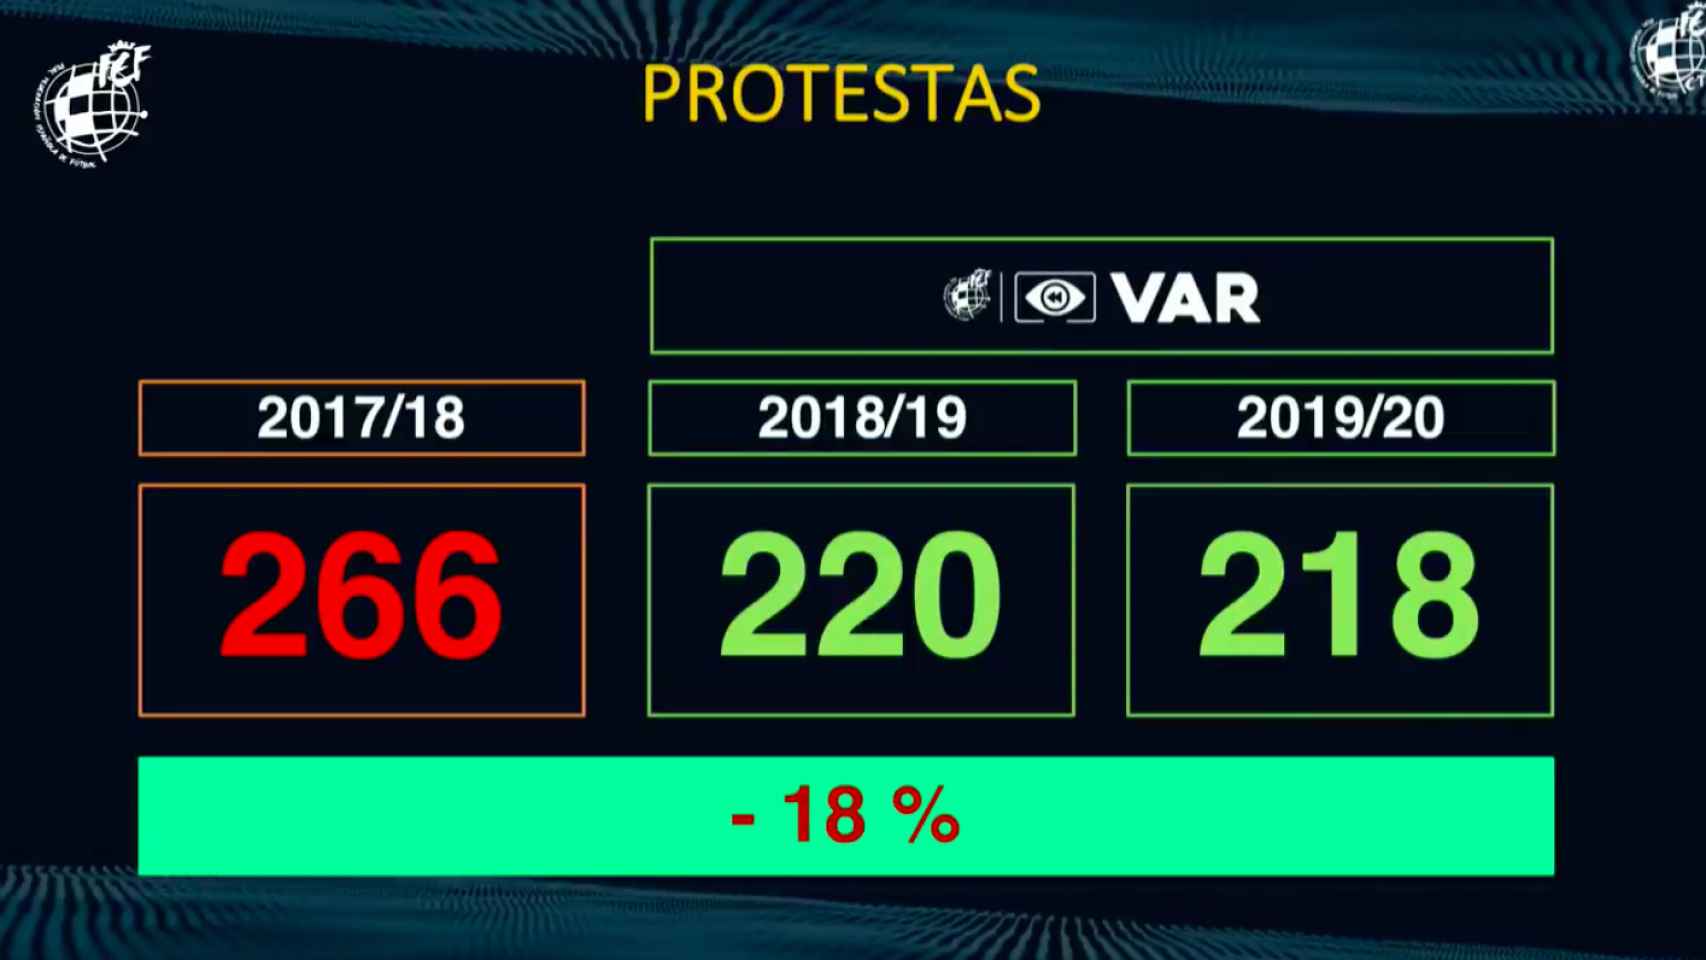 Índice de protestas en la temporada 2019/2020